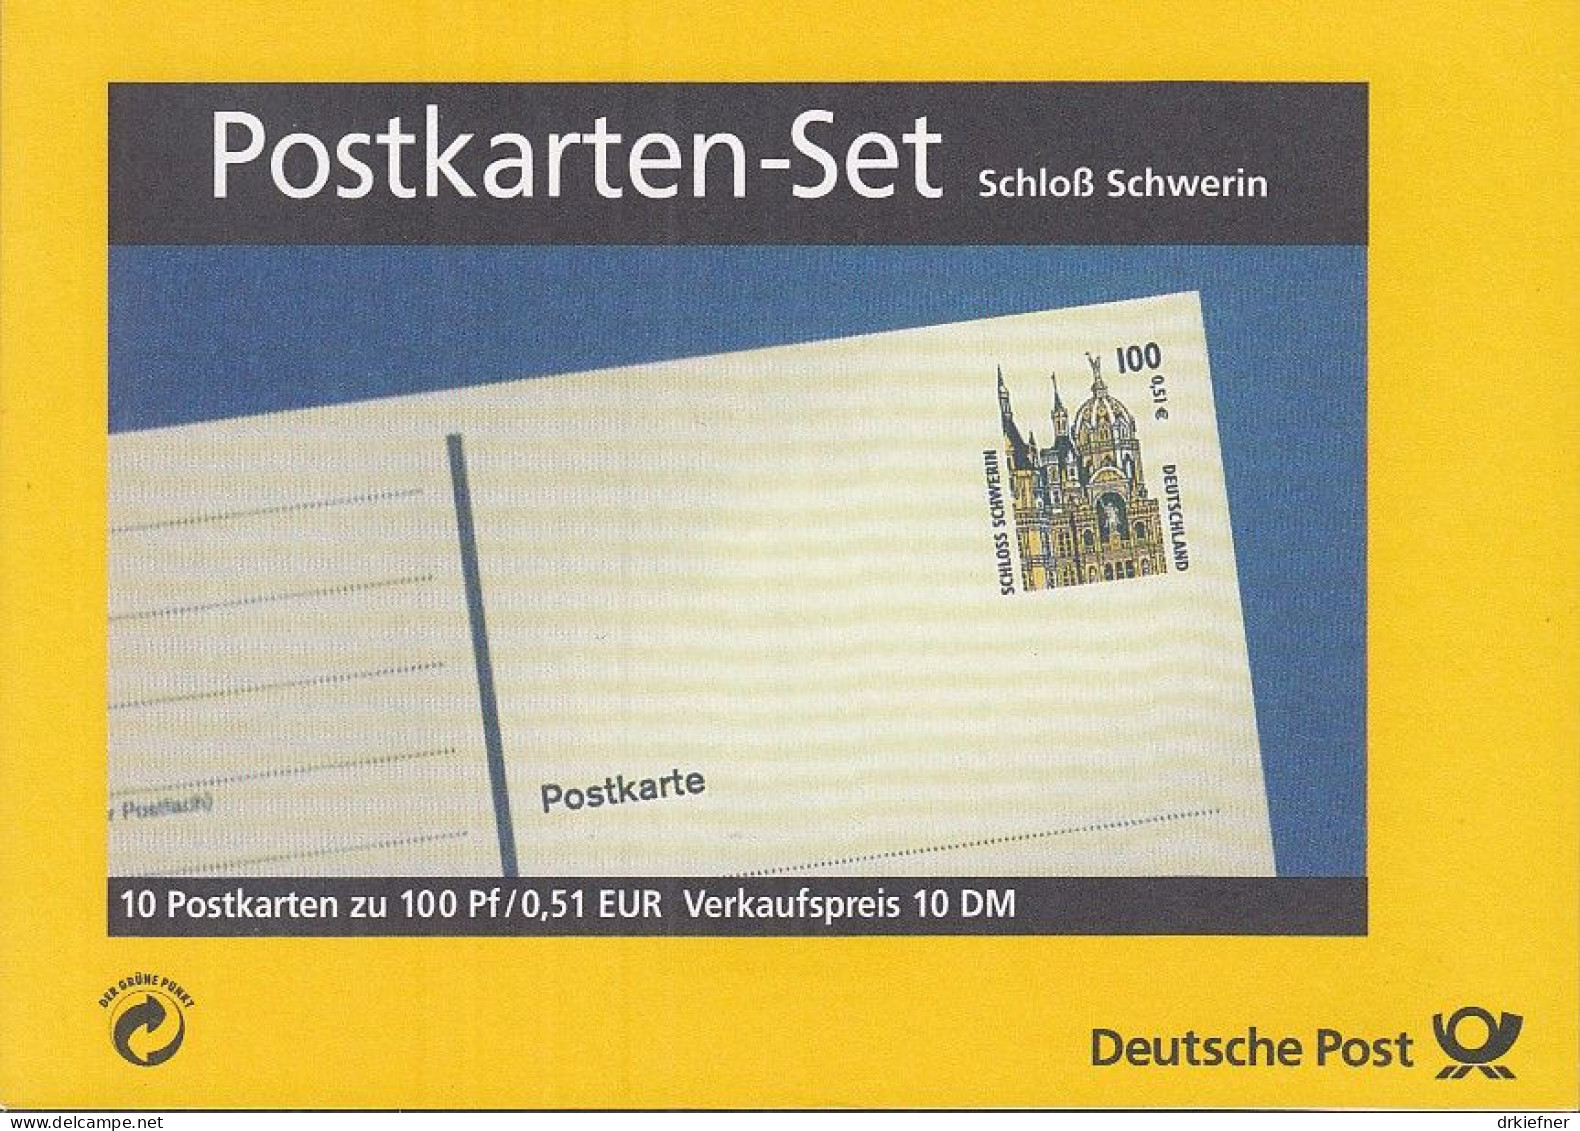 BRD PH 2 A, Postkartenheft, Ungebraucht, Schloss Schwerin, 2001 - Postkaarten - Ongebruikt